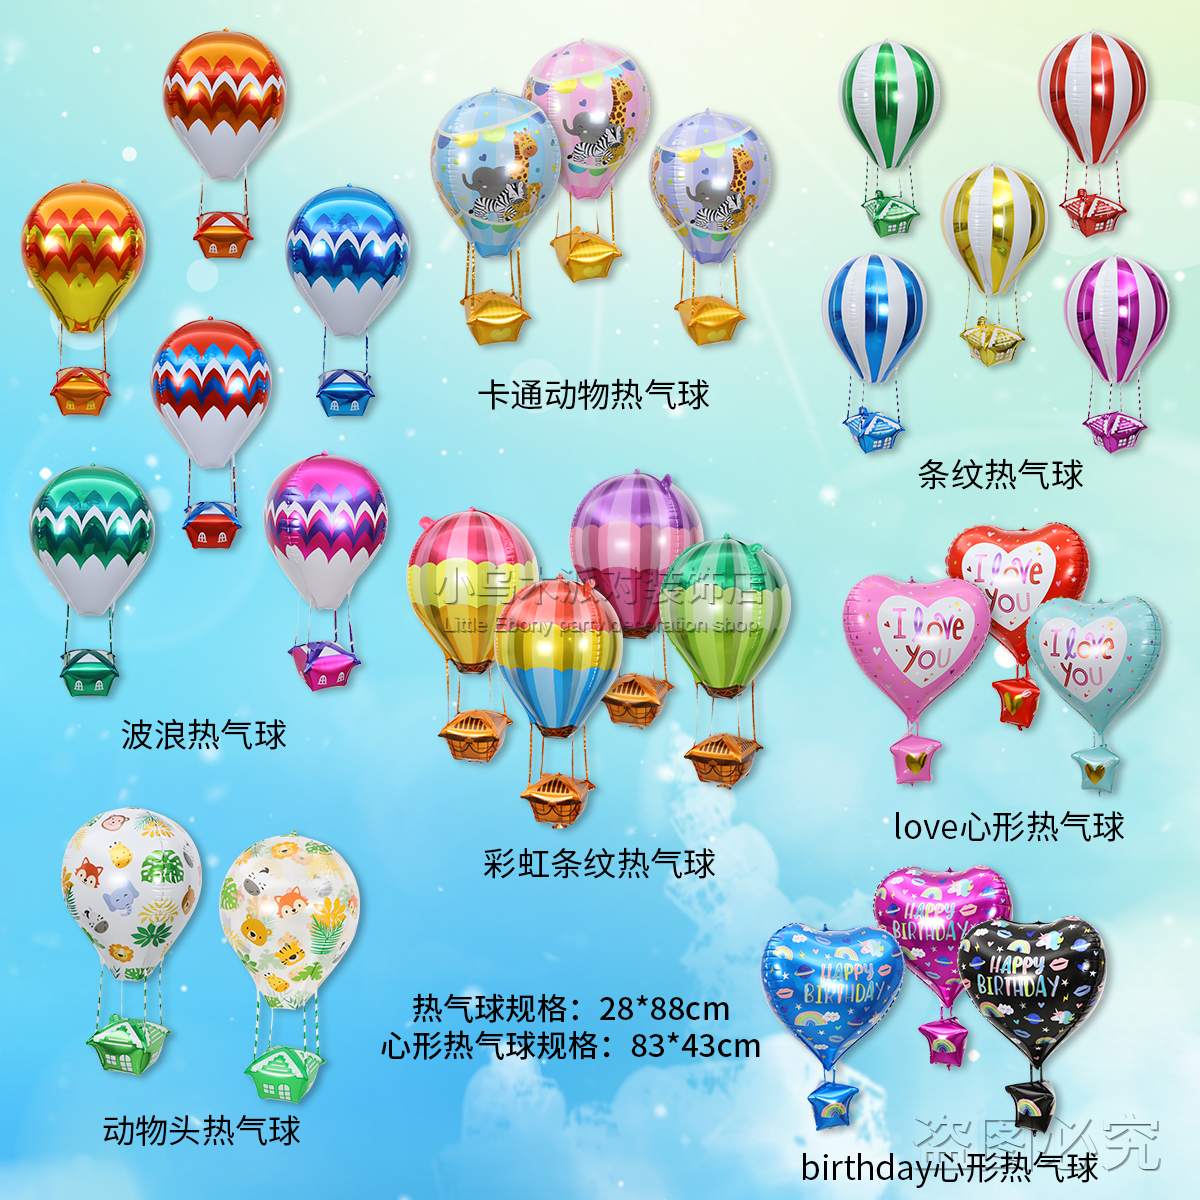 卡通造型热气球生日派对装饰飘空铝膜氦气球会飞户外升空网红汽球